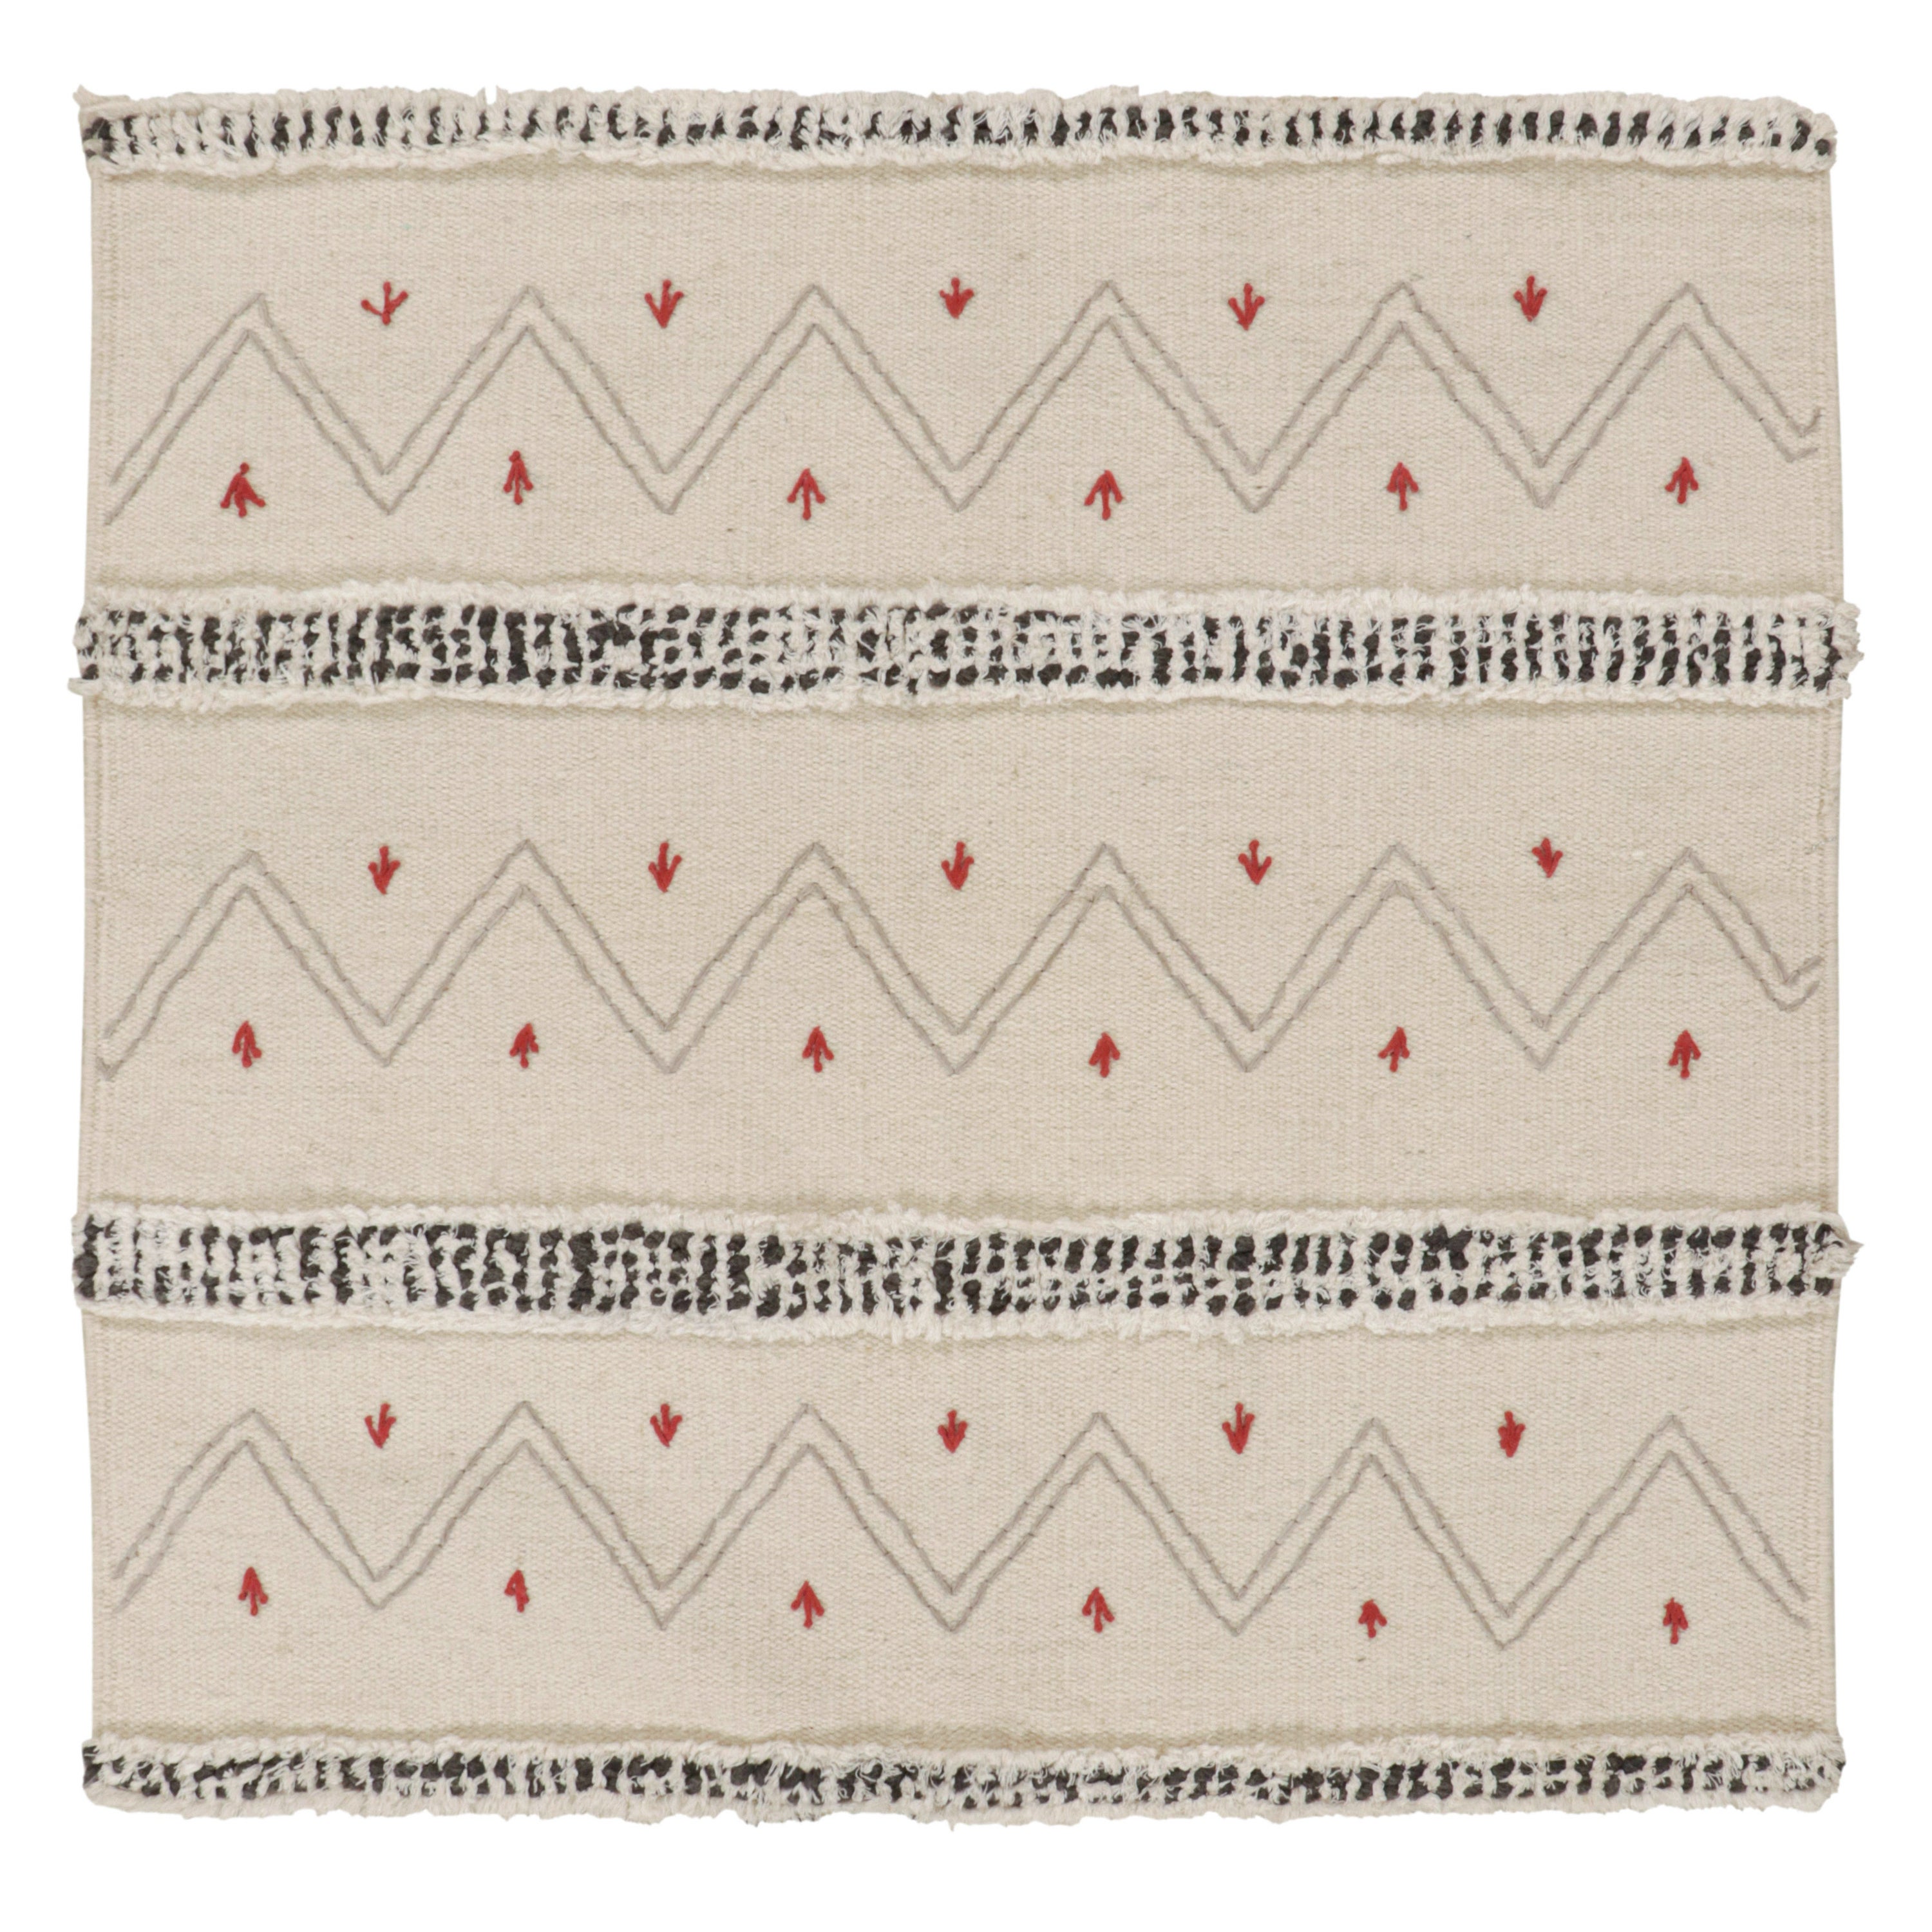 Tapis & Kilim's Tribal-Style Kilim in Off white, Gray and Red Geometric Patterns (motifs géométriques blanc cassé, gris et rouge)